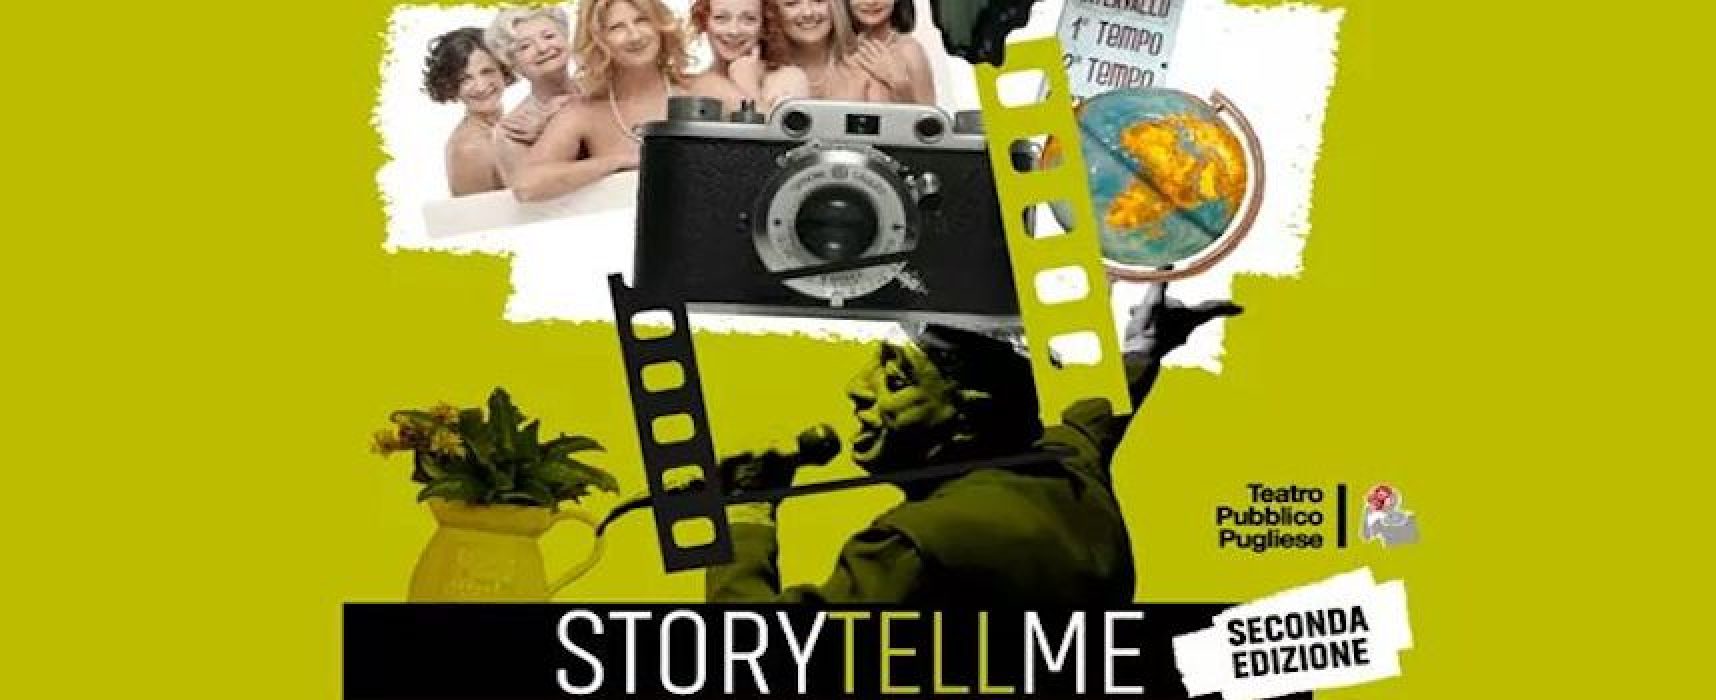 Diventa inviato speciale a teatro, aperte le candidature per la seconda edizione di Storytellme